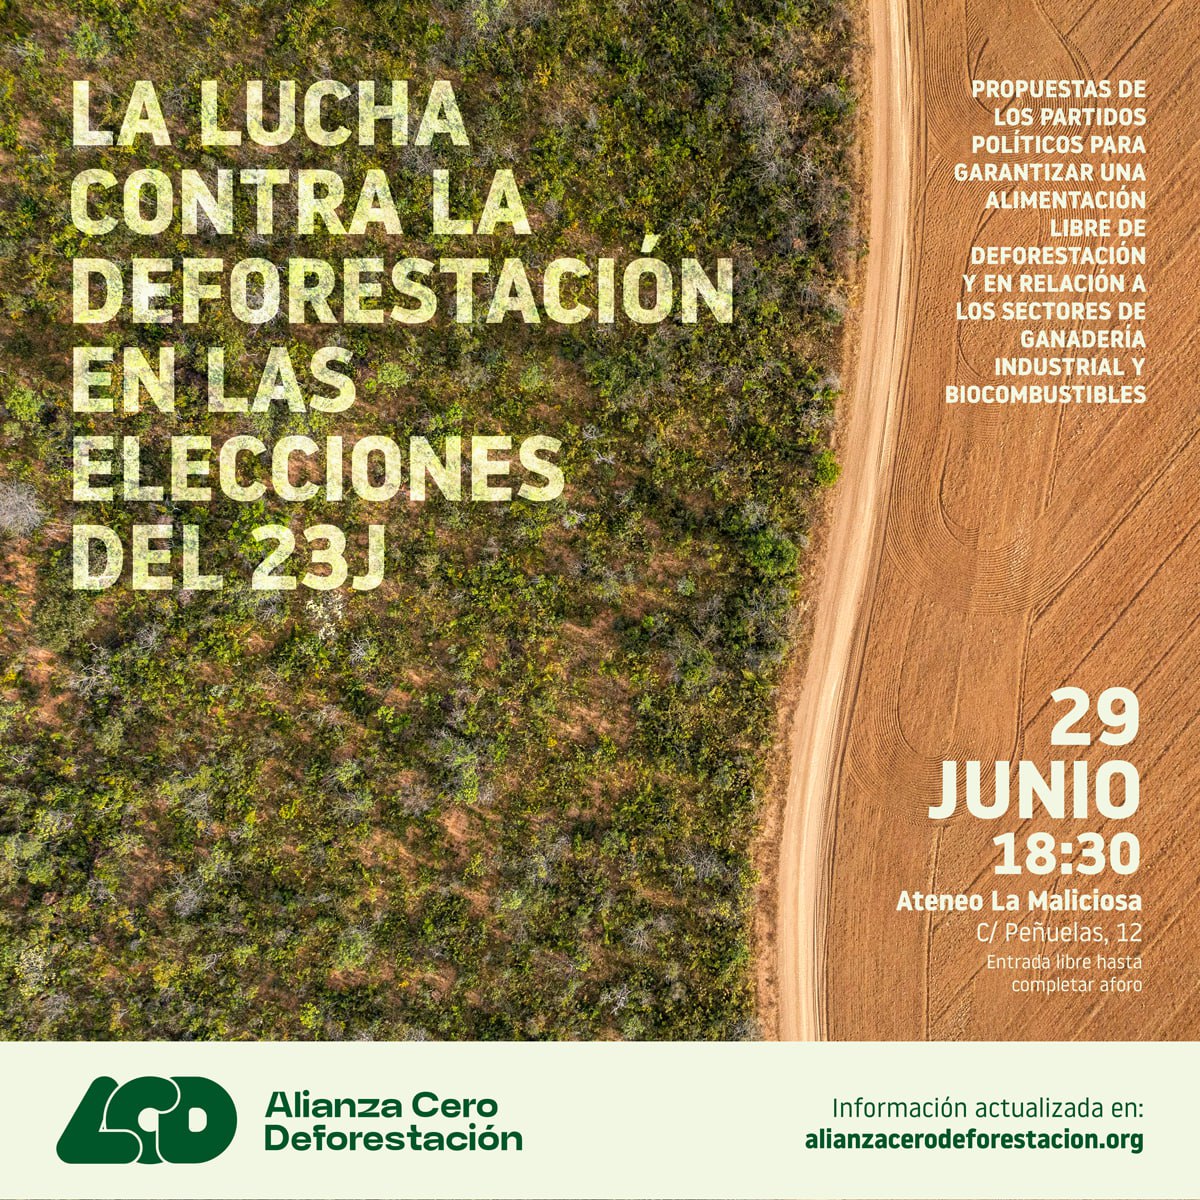 La lucha contra la deforestación en las elecciones del 23-J